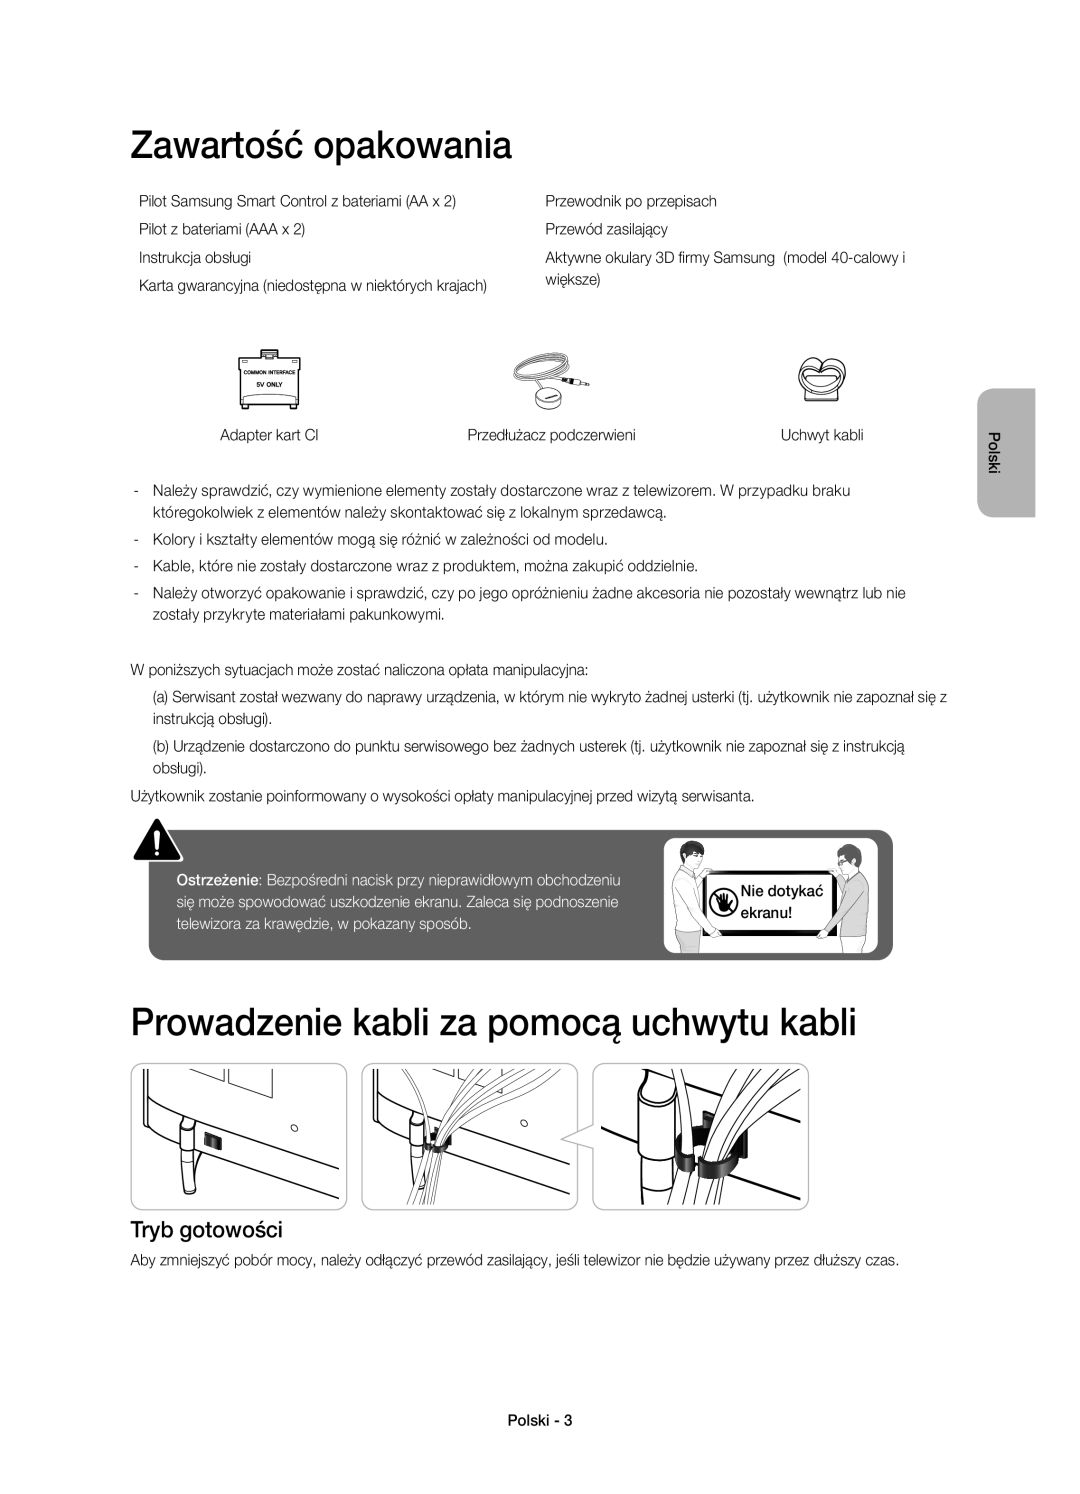 Samsung UE48H6410SSXXN manual Zawartość opakowania, Prowadzenie kabli za pomocą uchwytu kabli, Tryb gotowości, Nie dotykać 